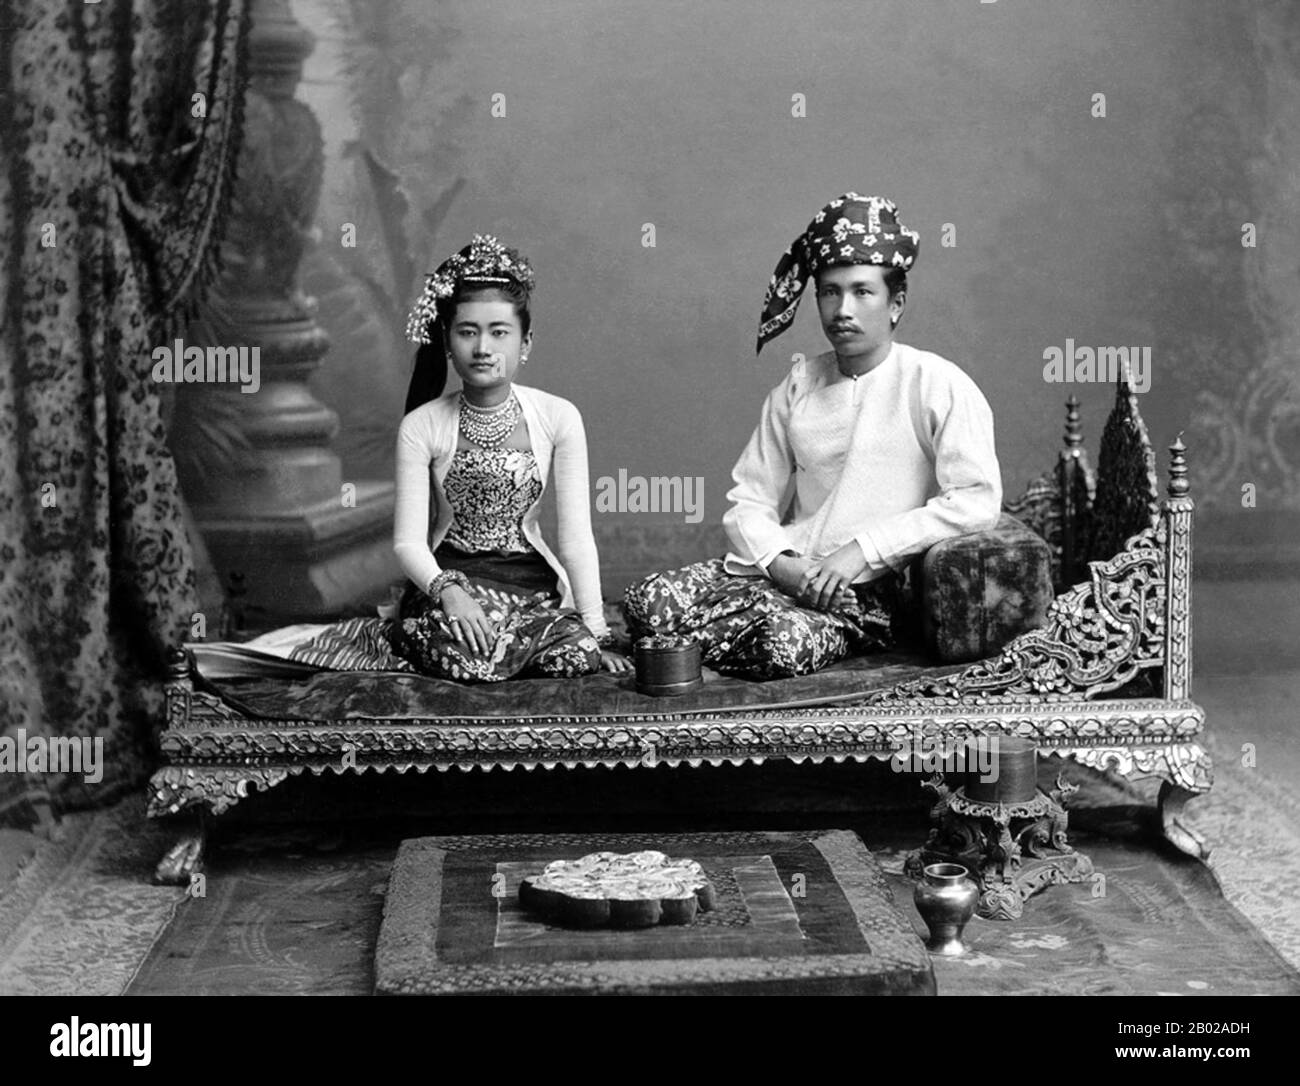 Philip Adolphe Klier était un photographe allemand plus connu pour ses photos de Birmanie coloniale / Myanmar. En 1871, il était photographe professionnel à Moulmein, en Birmanie. Ses affaires comprenaient le travail d'opticien, de horloger et de joaillier, ainsi que la gestion de la société connue sous le nom de Murken & Klier. Vers 1880, Klier déménage à Rangoon, la plus grande ville de Birmanie. après la conquête du delta de l'Irrawaddy par les Britanniques en 1852, Rangoon est devenu le centre de la puissance indo-britannique. Klier a travaillé indépendamment jusqu'en 1885 lorsqu'il est entré en partenariat avec J. Jackson. En 1890, le partenariat a été dissous Banque D'Images